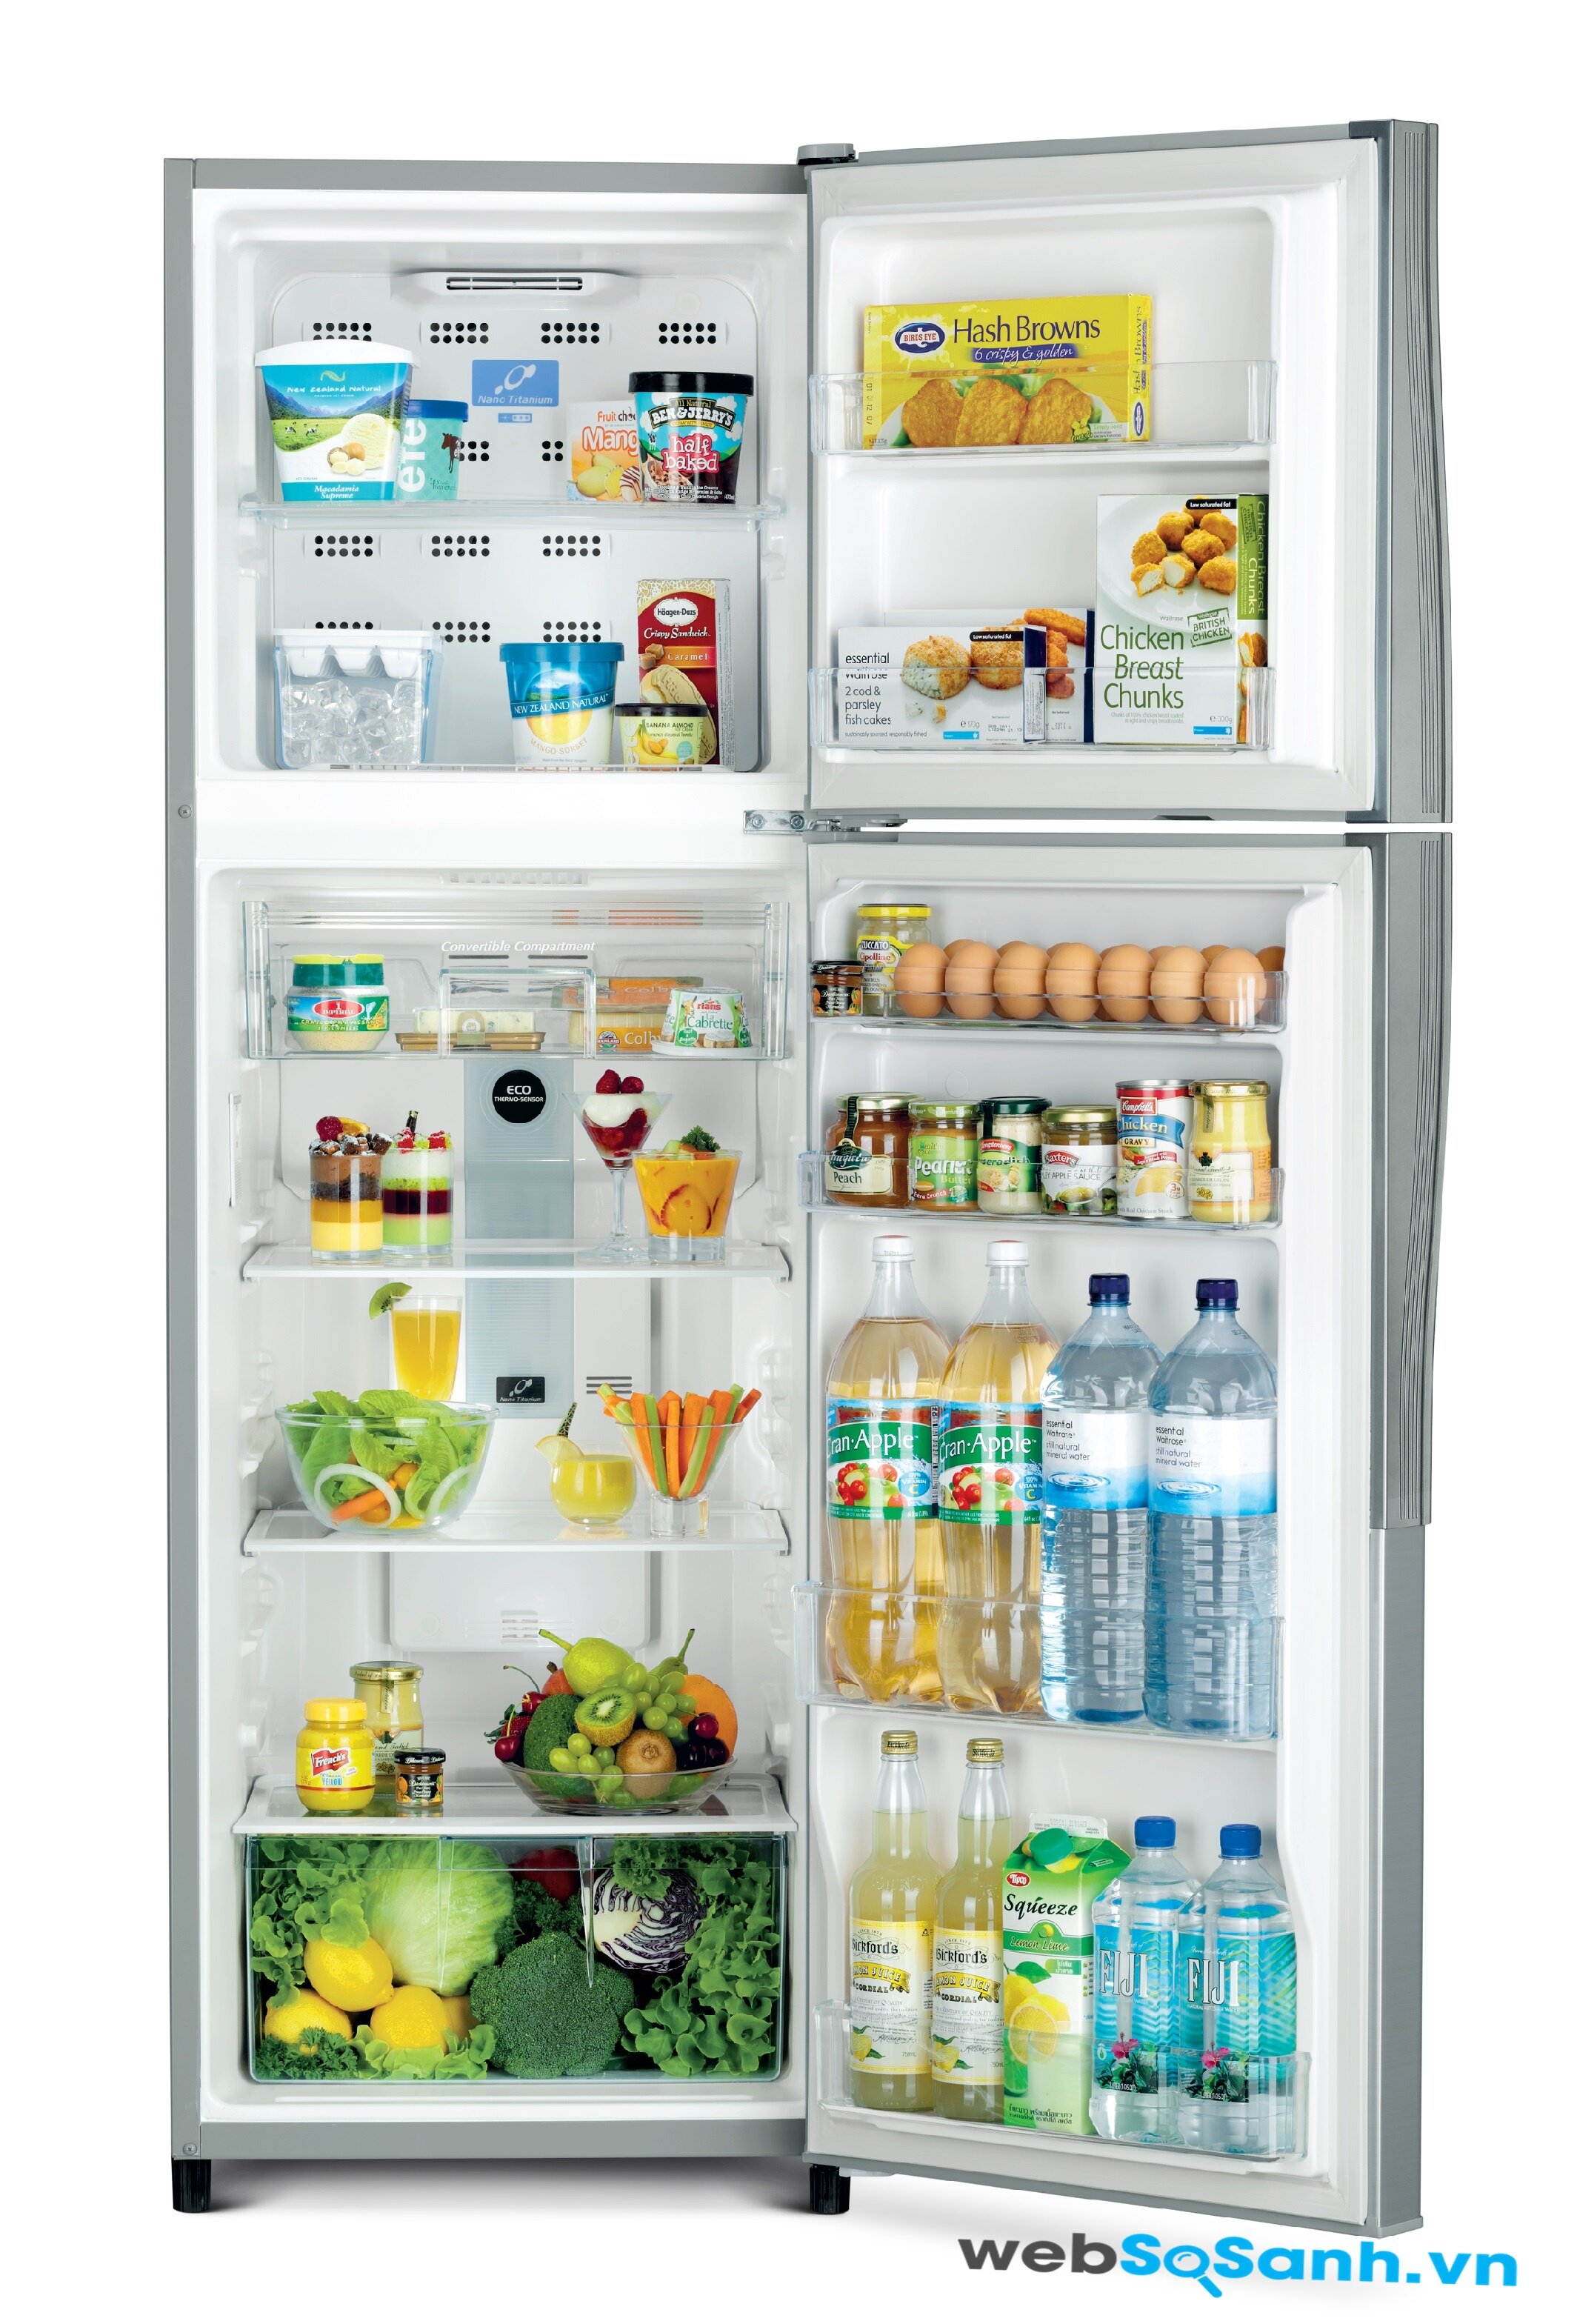 Tủ lạnh Hitachi R-T190EG1 tiết kiệm điện với cảm biến nhiệt độ Eco